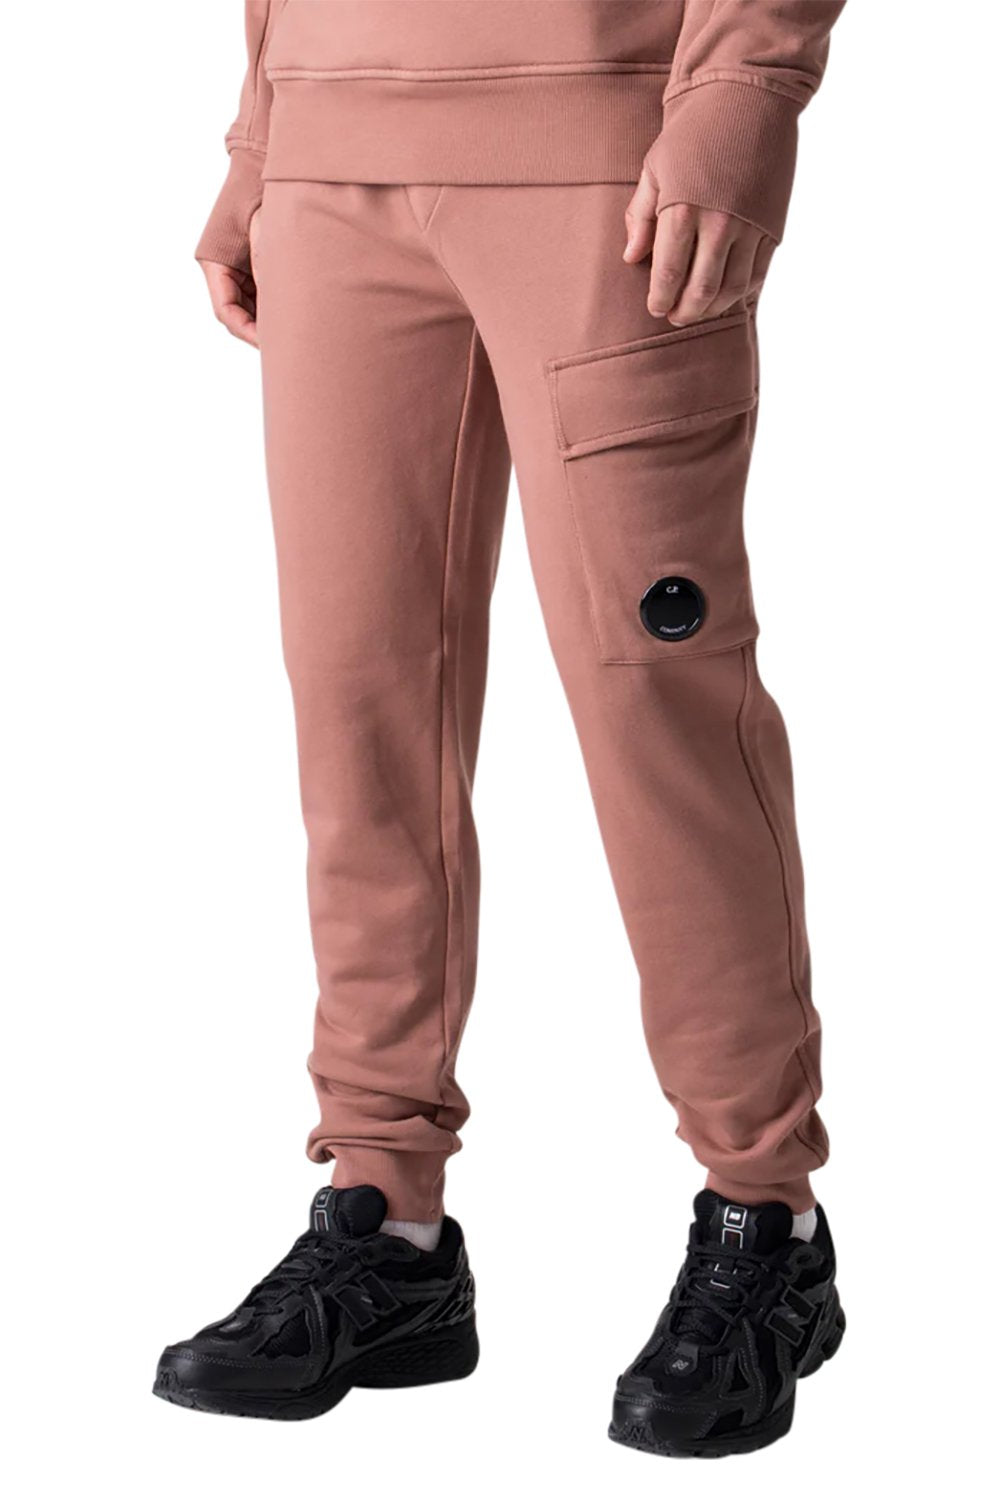 Men's C.P. Company Lens-Detail Cotton Cedar Wood Jogger pants